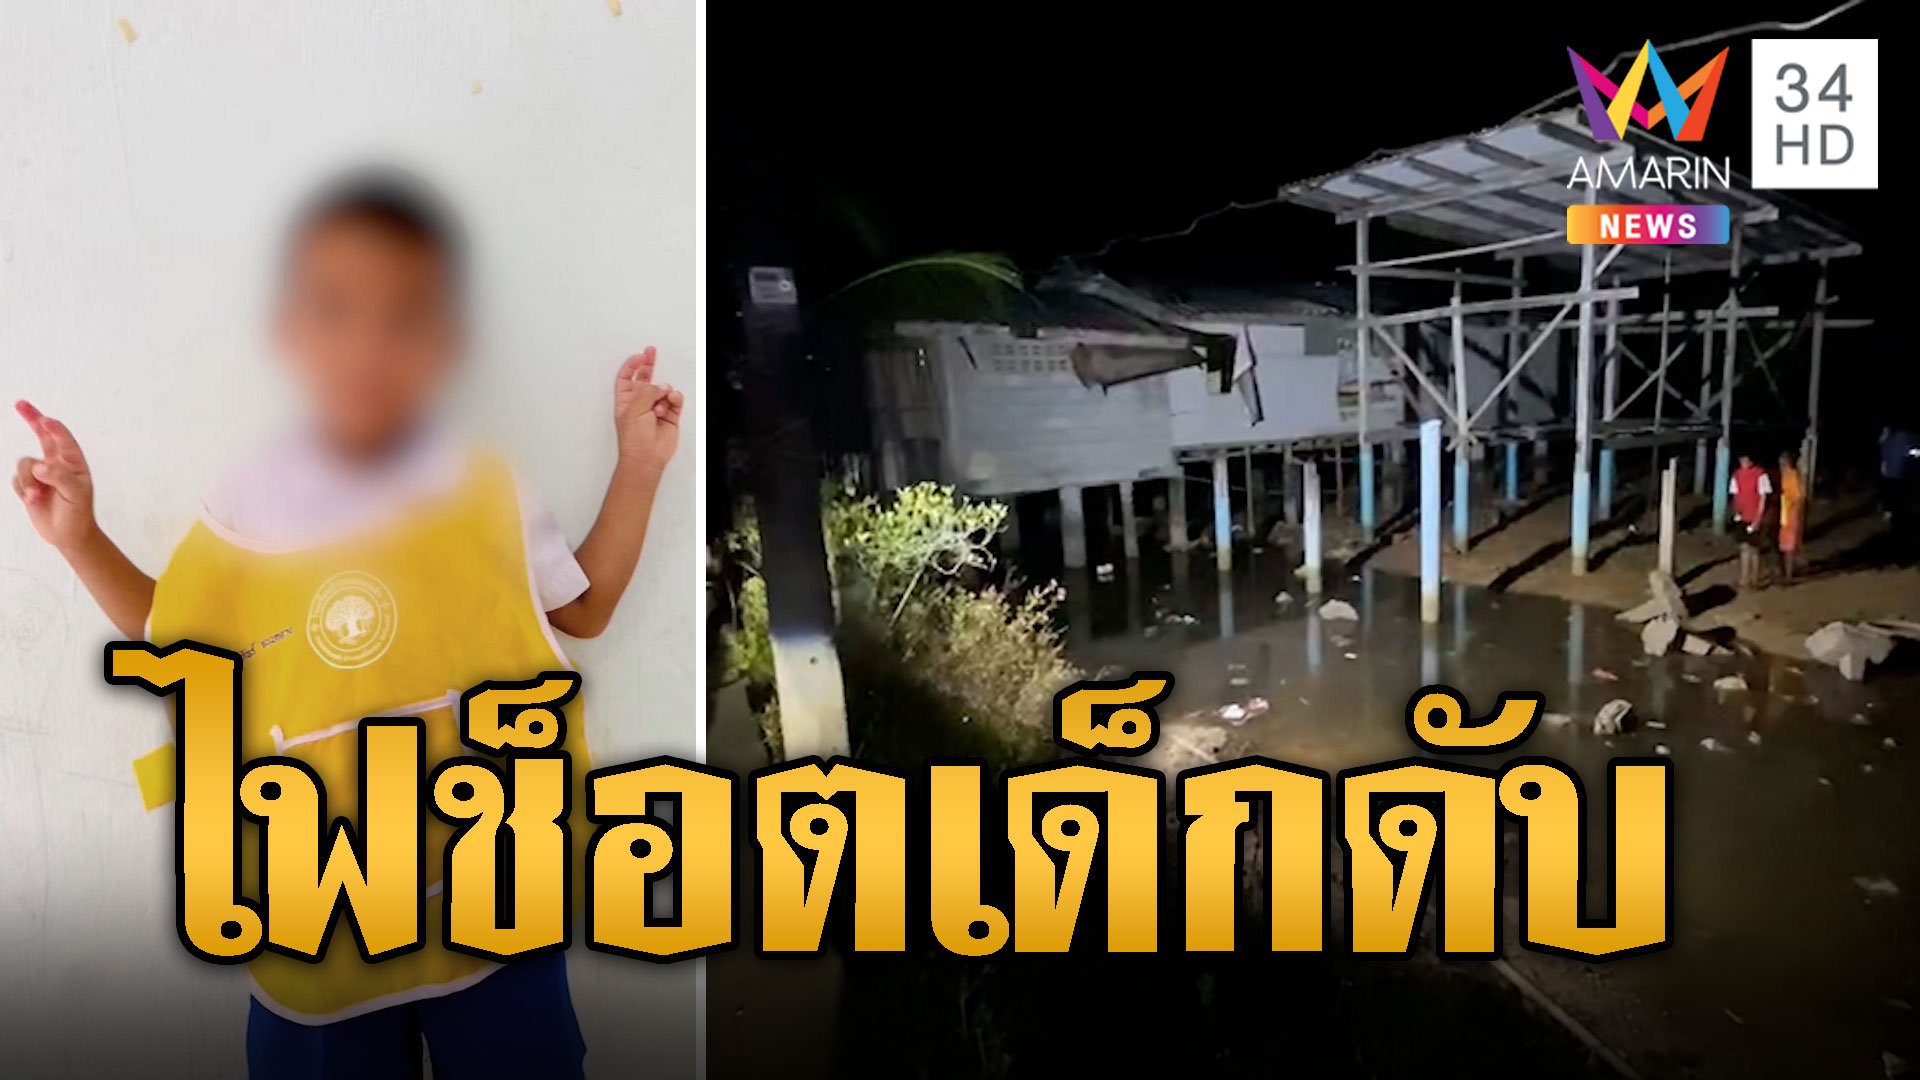 สลด! เด็ก 6 ขวบดับใกล้บ้าน คาดถูกไฟช็อต | ข่าวเที่ยงอมรินทร์ | 23 ก.พ. 67 | AMARIN TVHD34